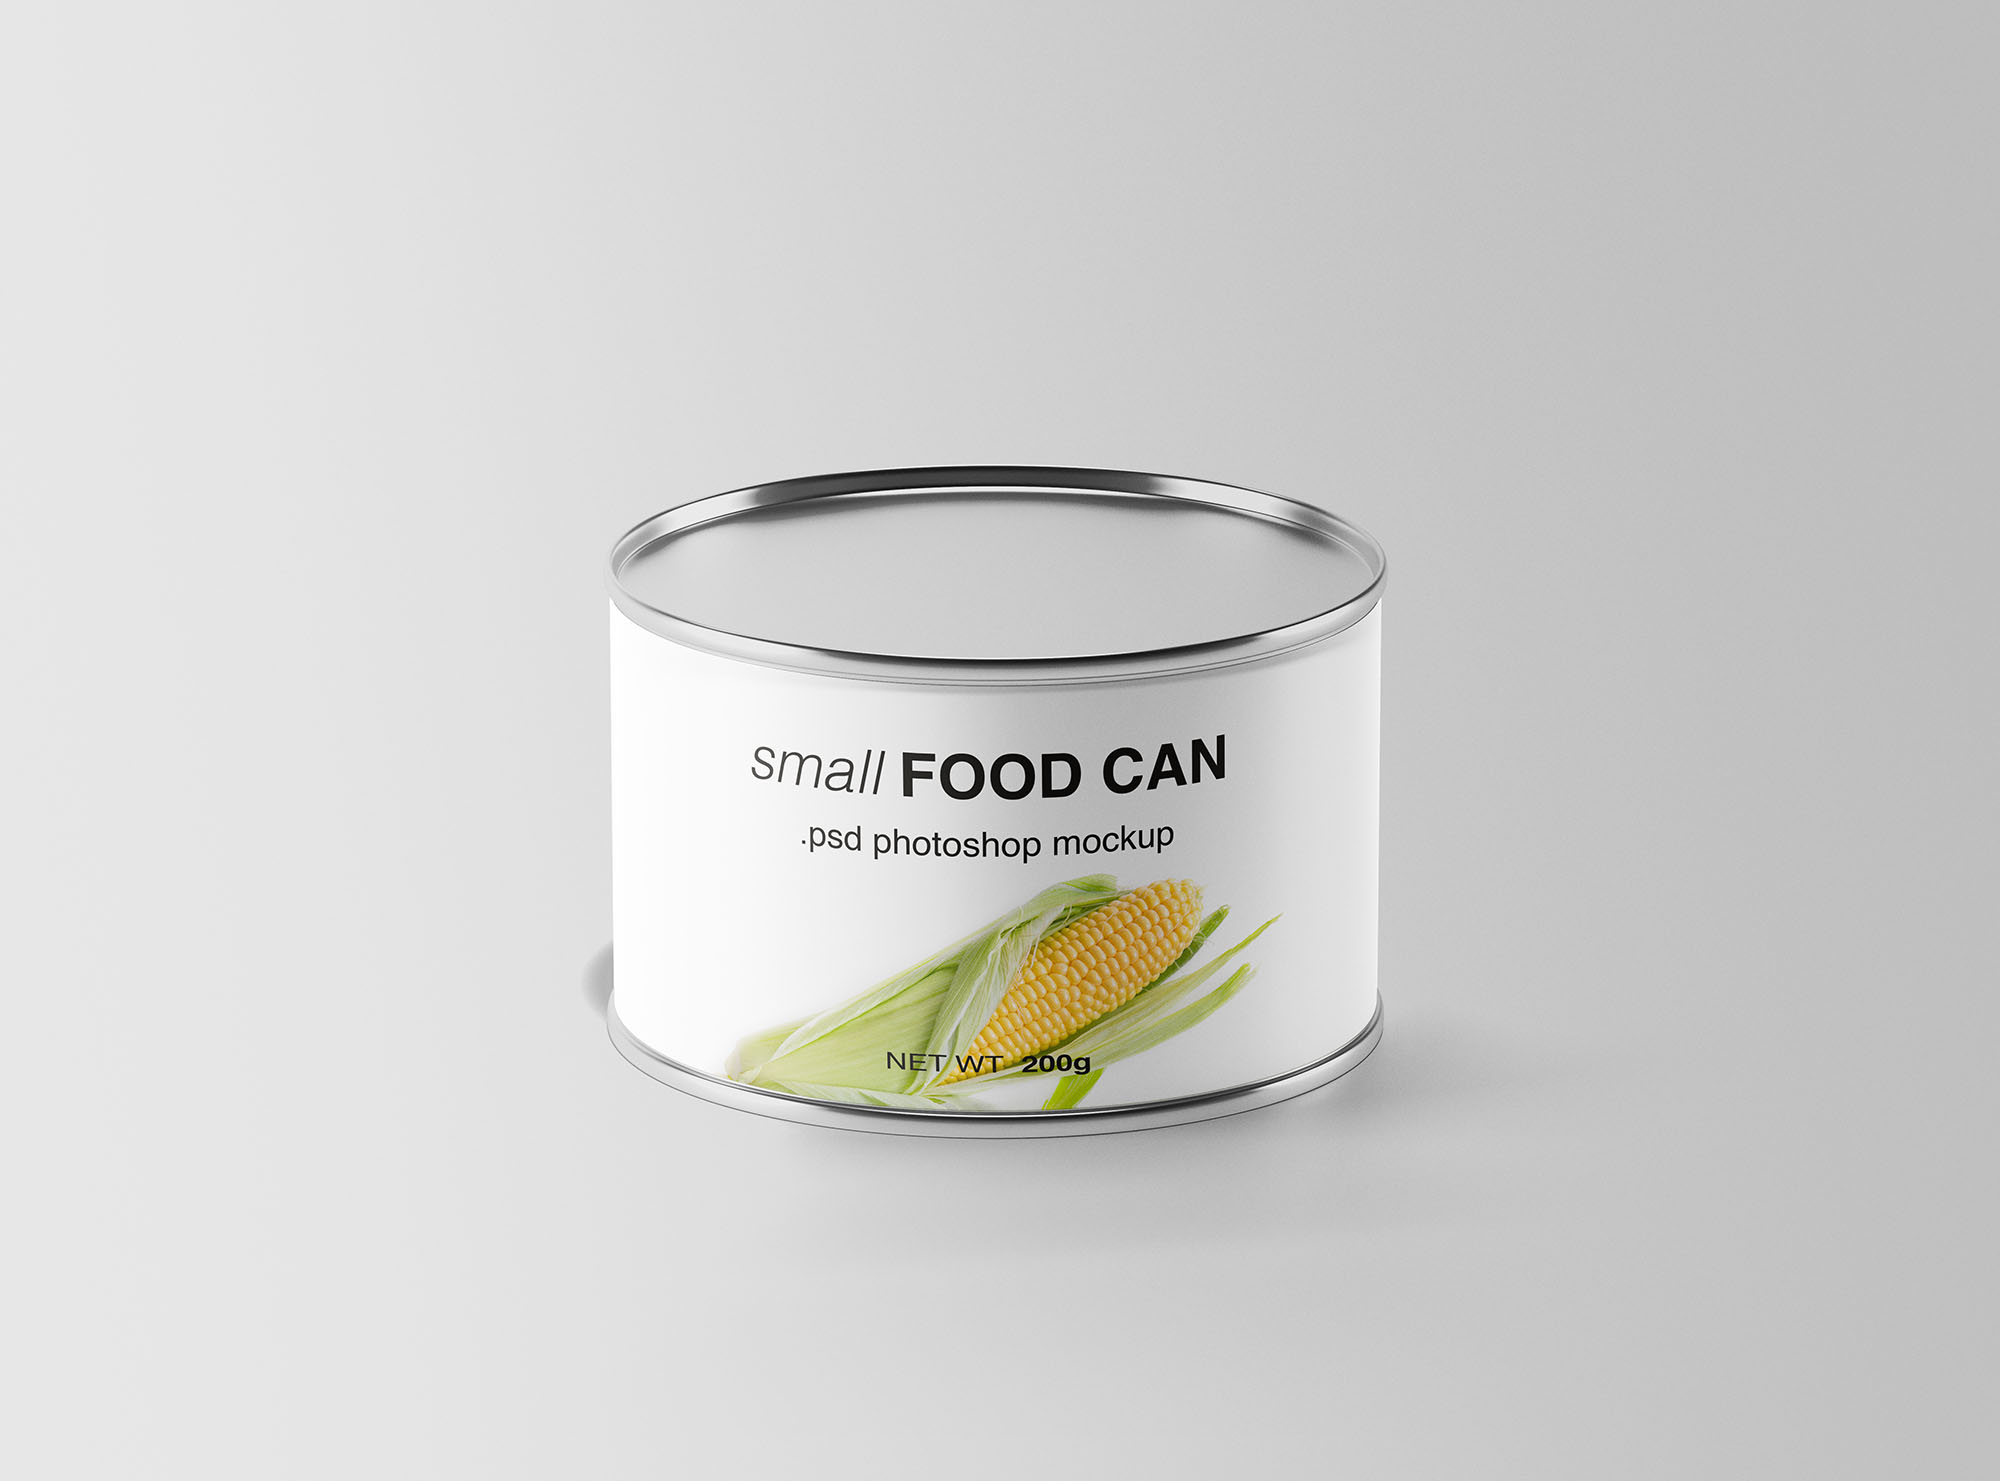 食品罐头包装设计效果图样机 Small Food Can Mockup插图